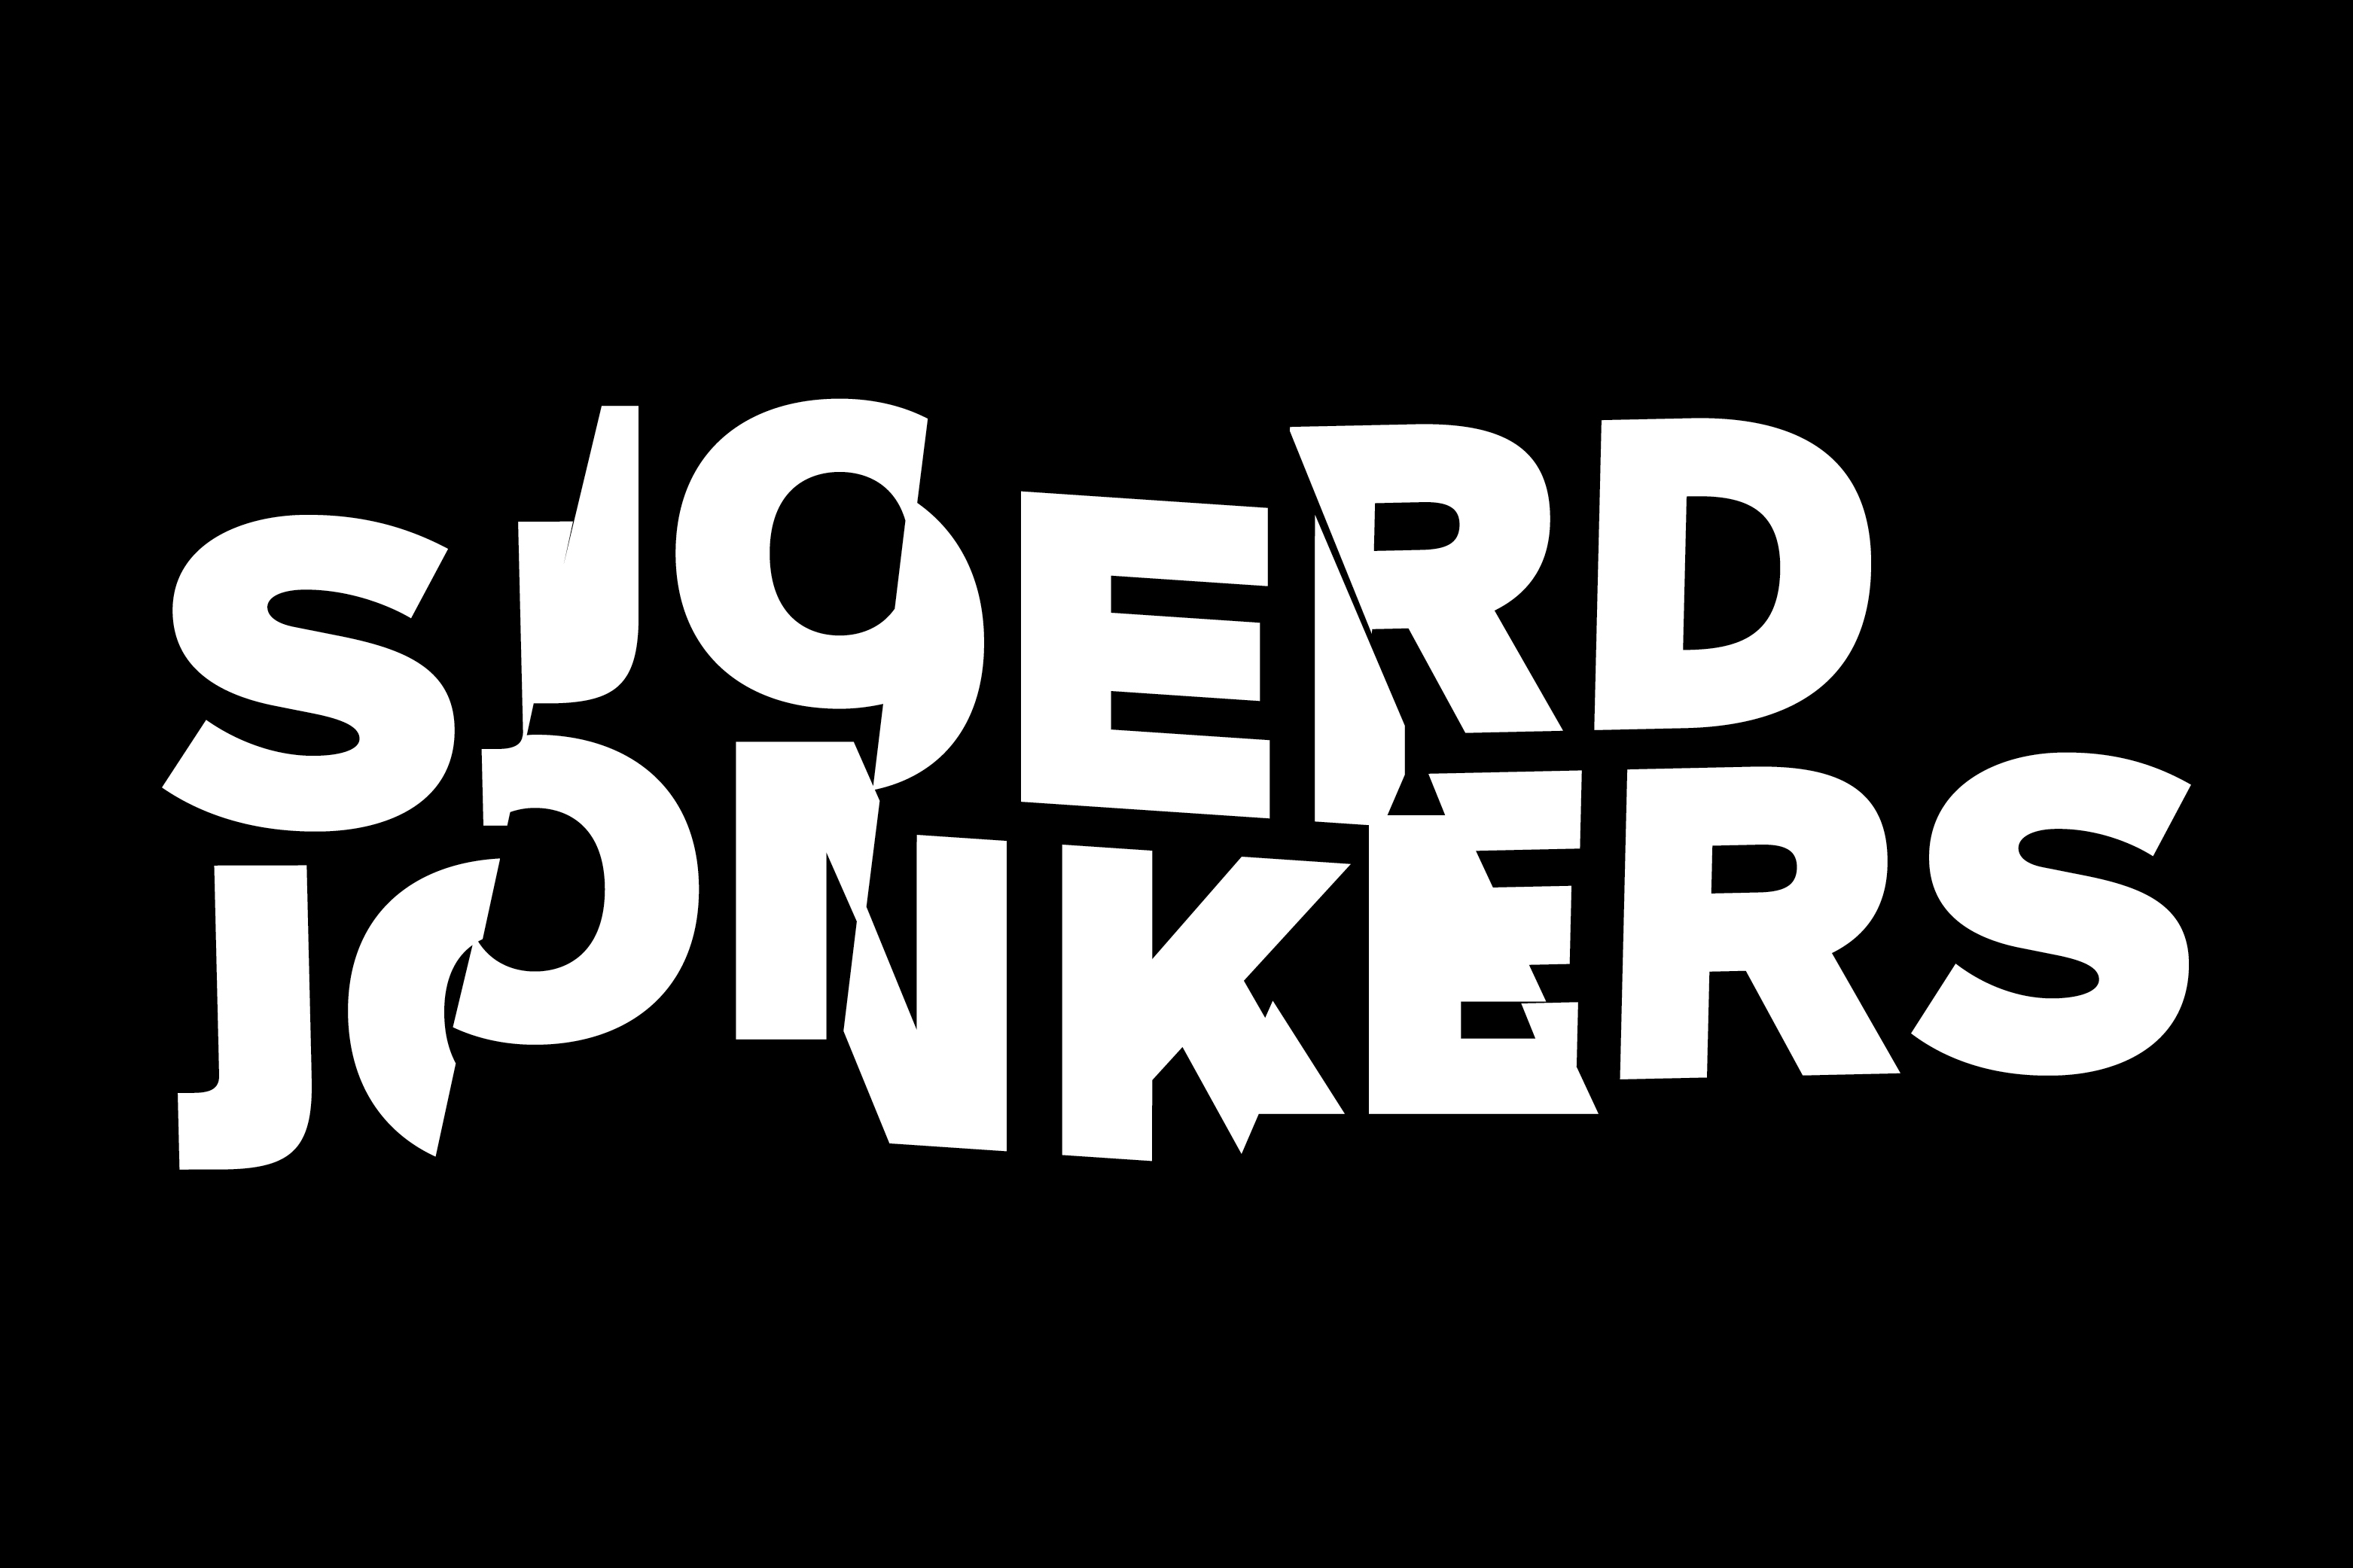 Sjoerd Jonkers